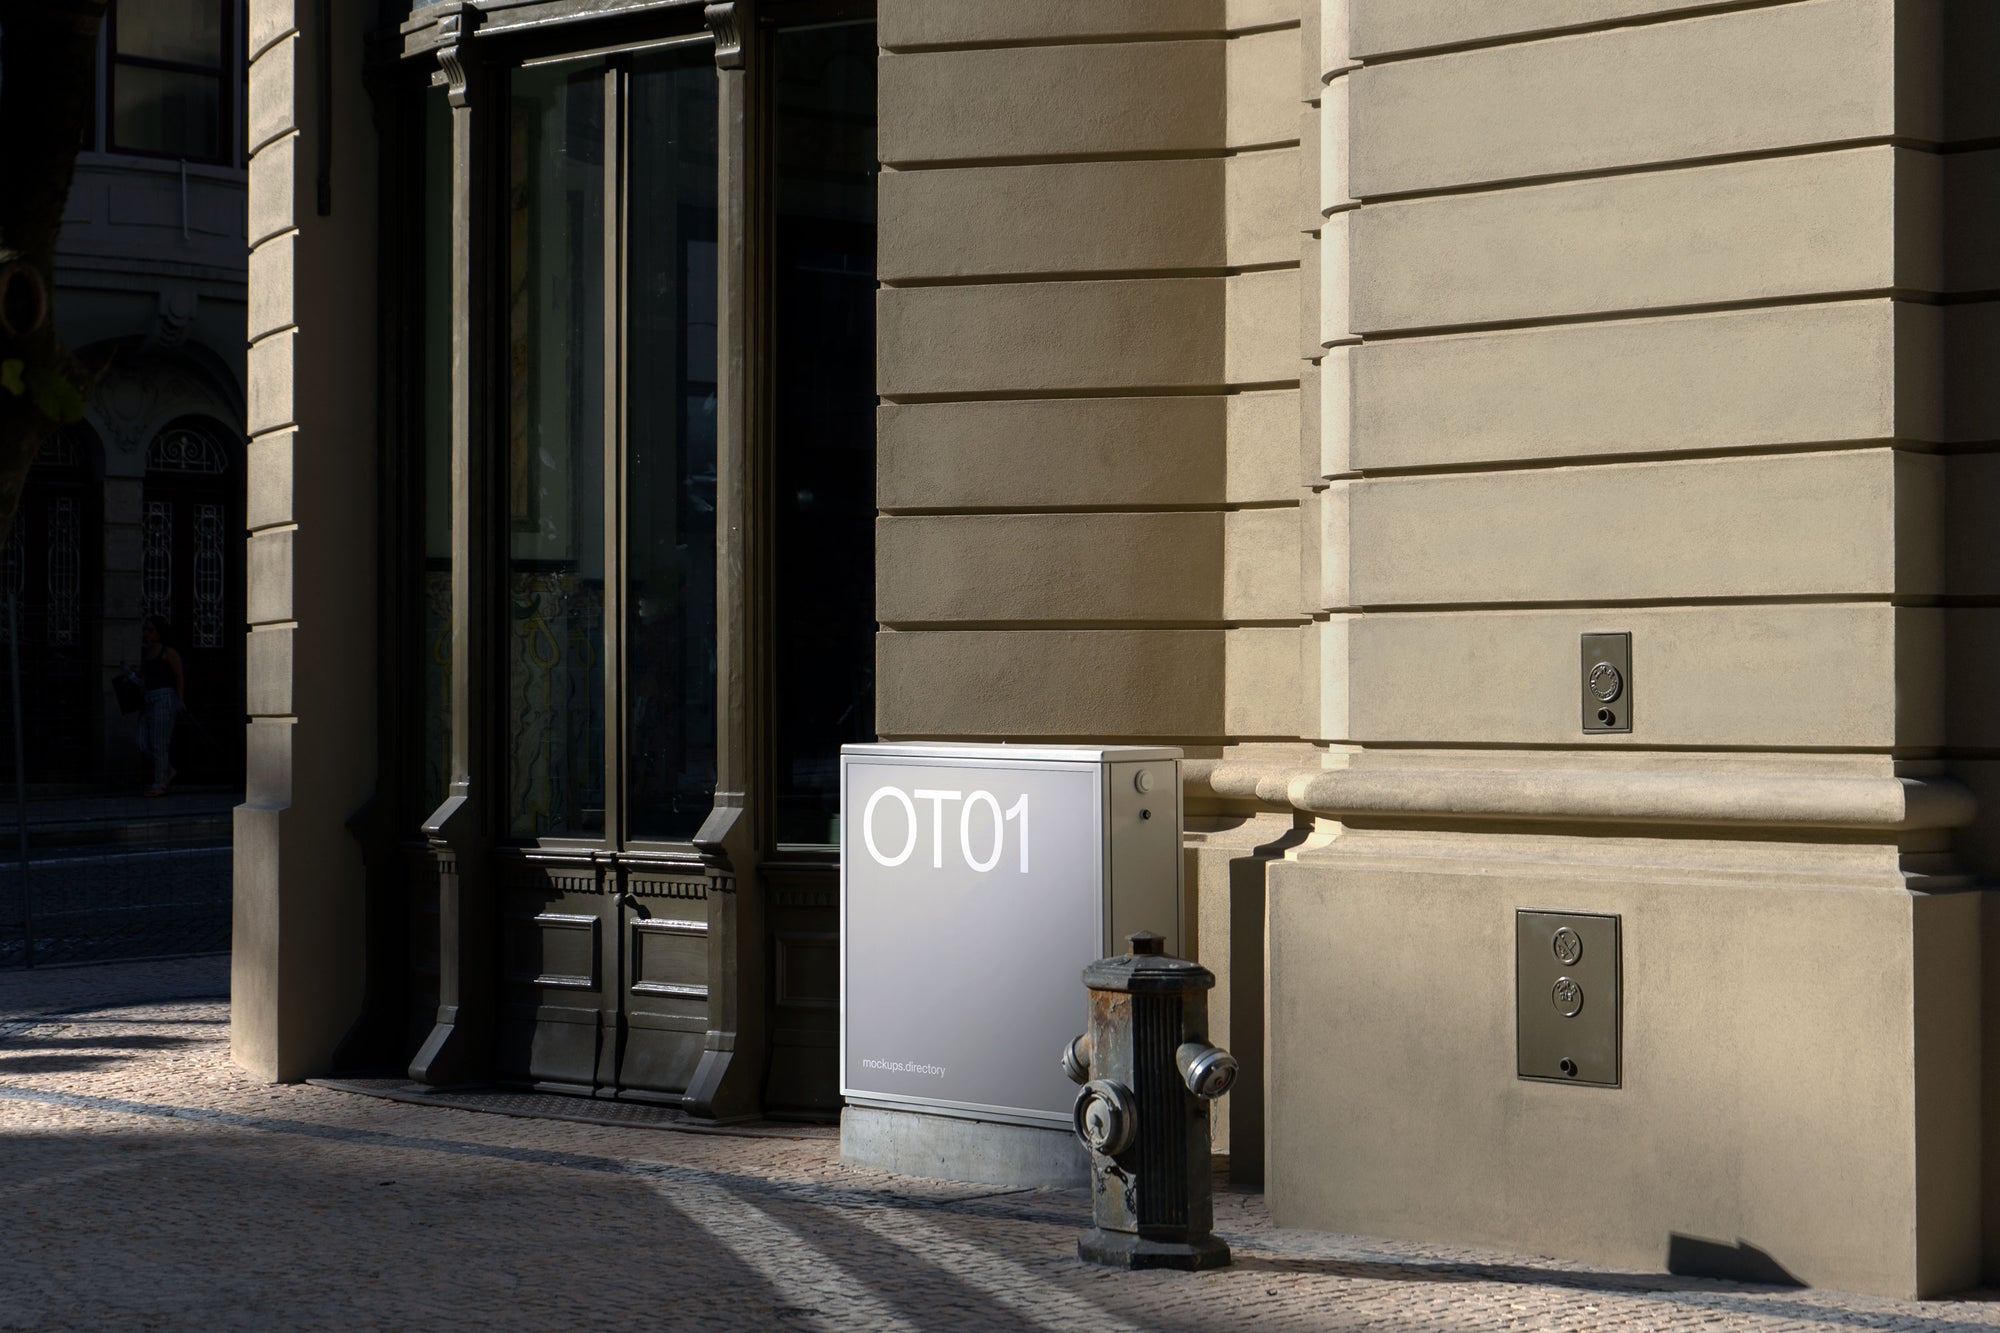 OT01 — Square Box